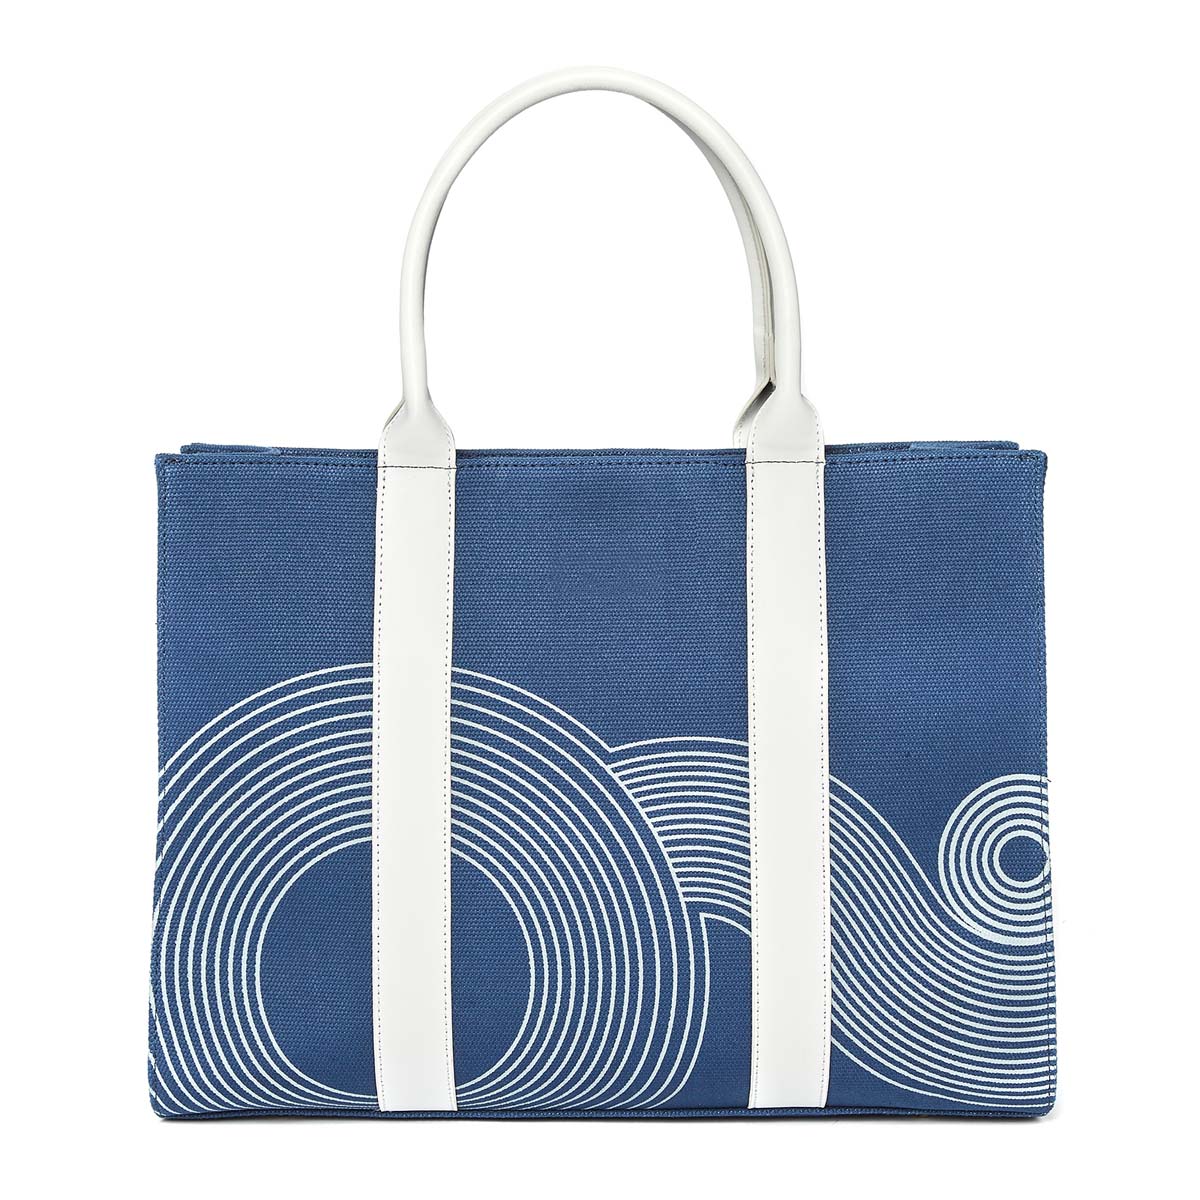 Grand sac cabas - motif Tokyo - bleu